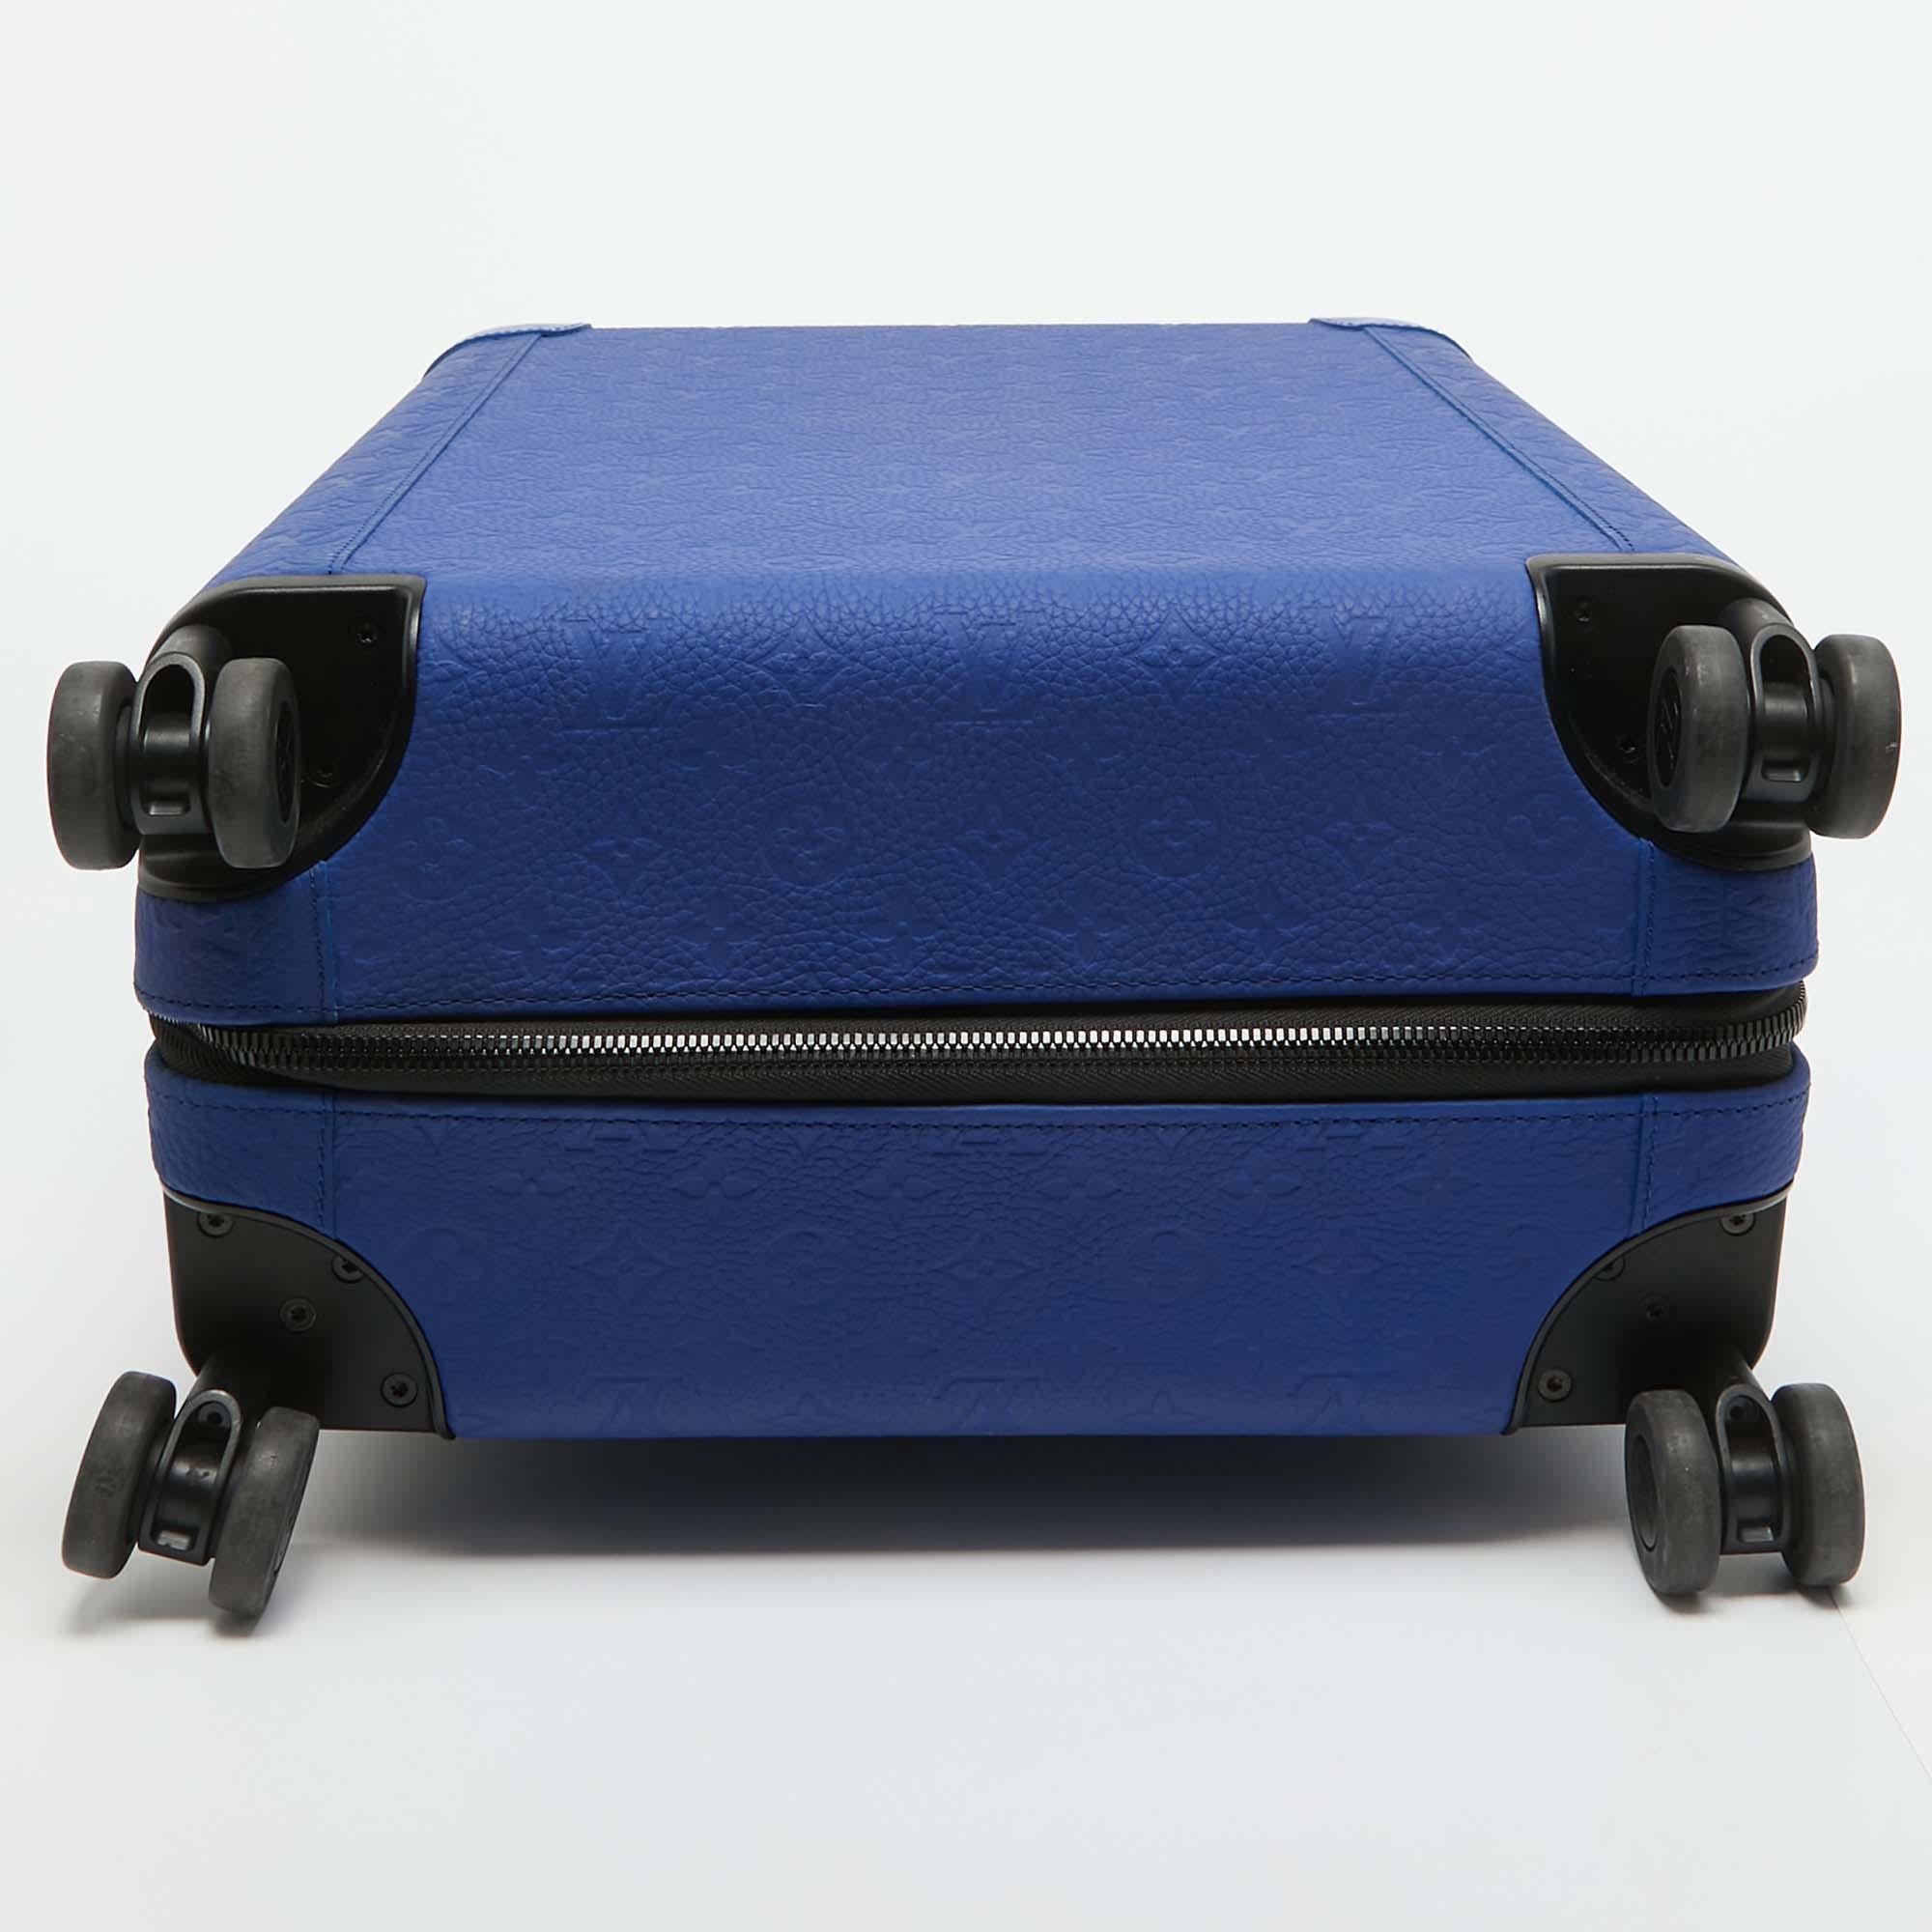 Louis Vuitton Valigia Horizon 55 in pelle Monogram Empreinte blu corsa 1